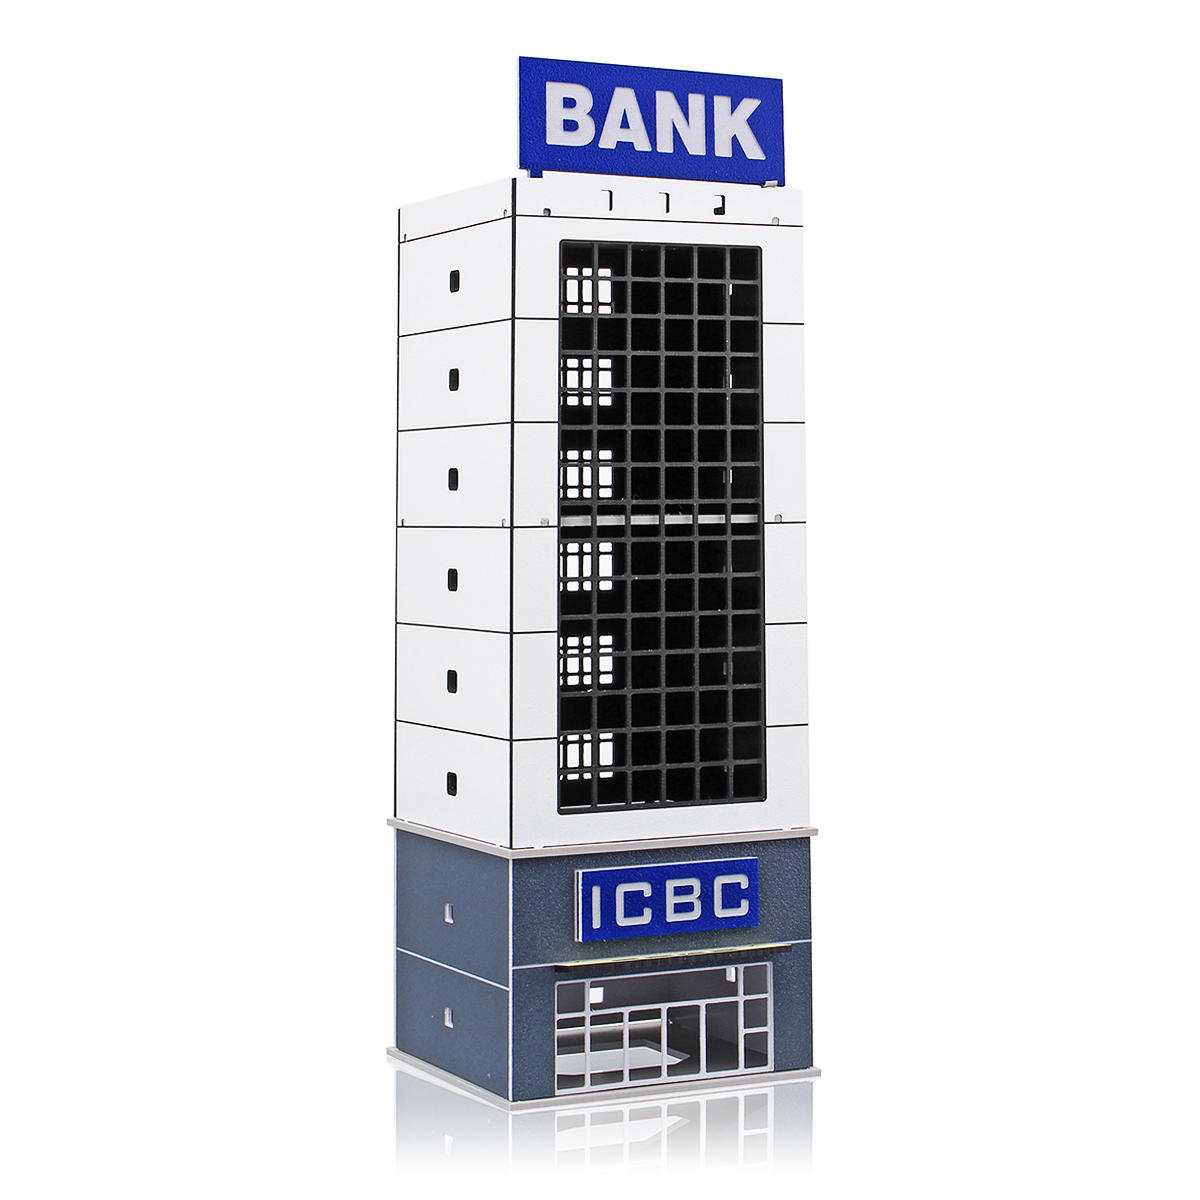 1/150 outland modern building model bank n-schaal voor gundam-geschenken